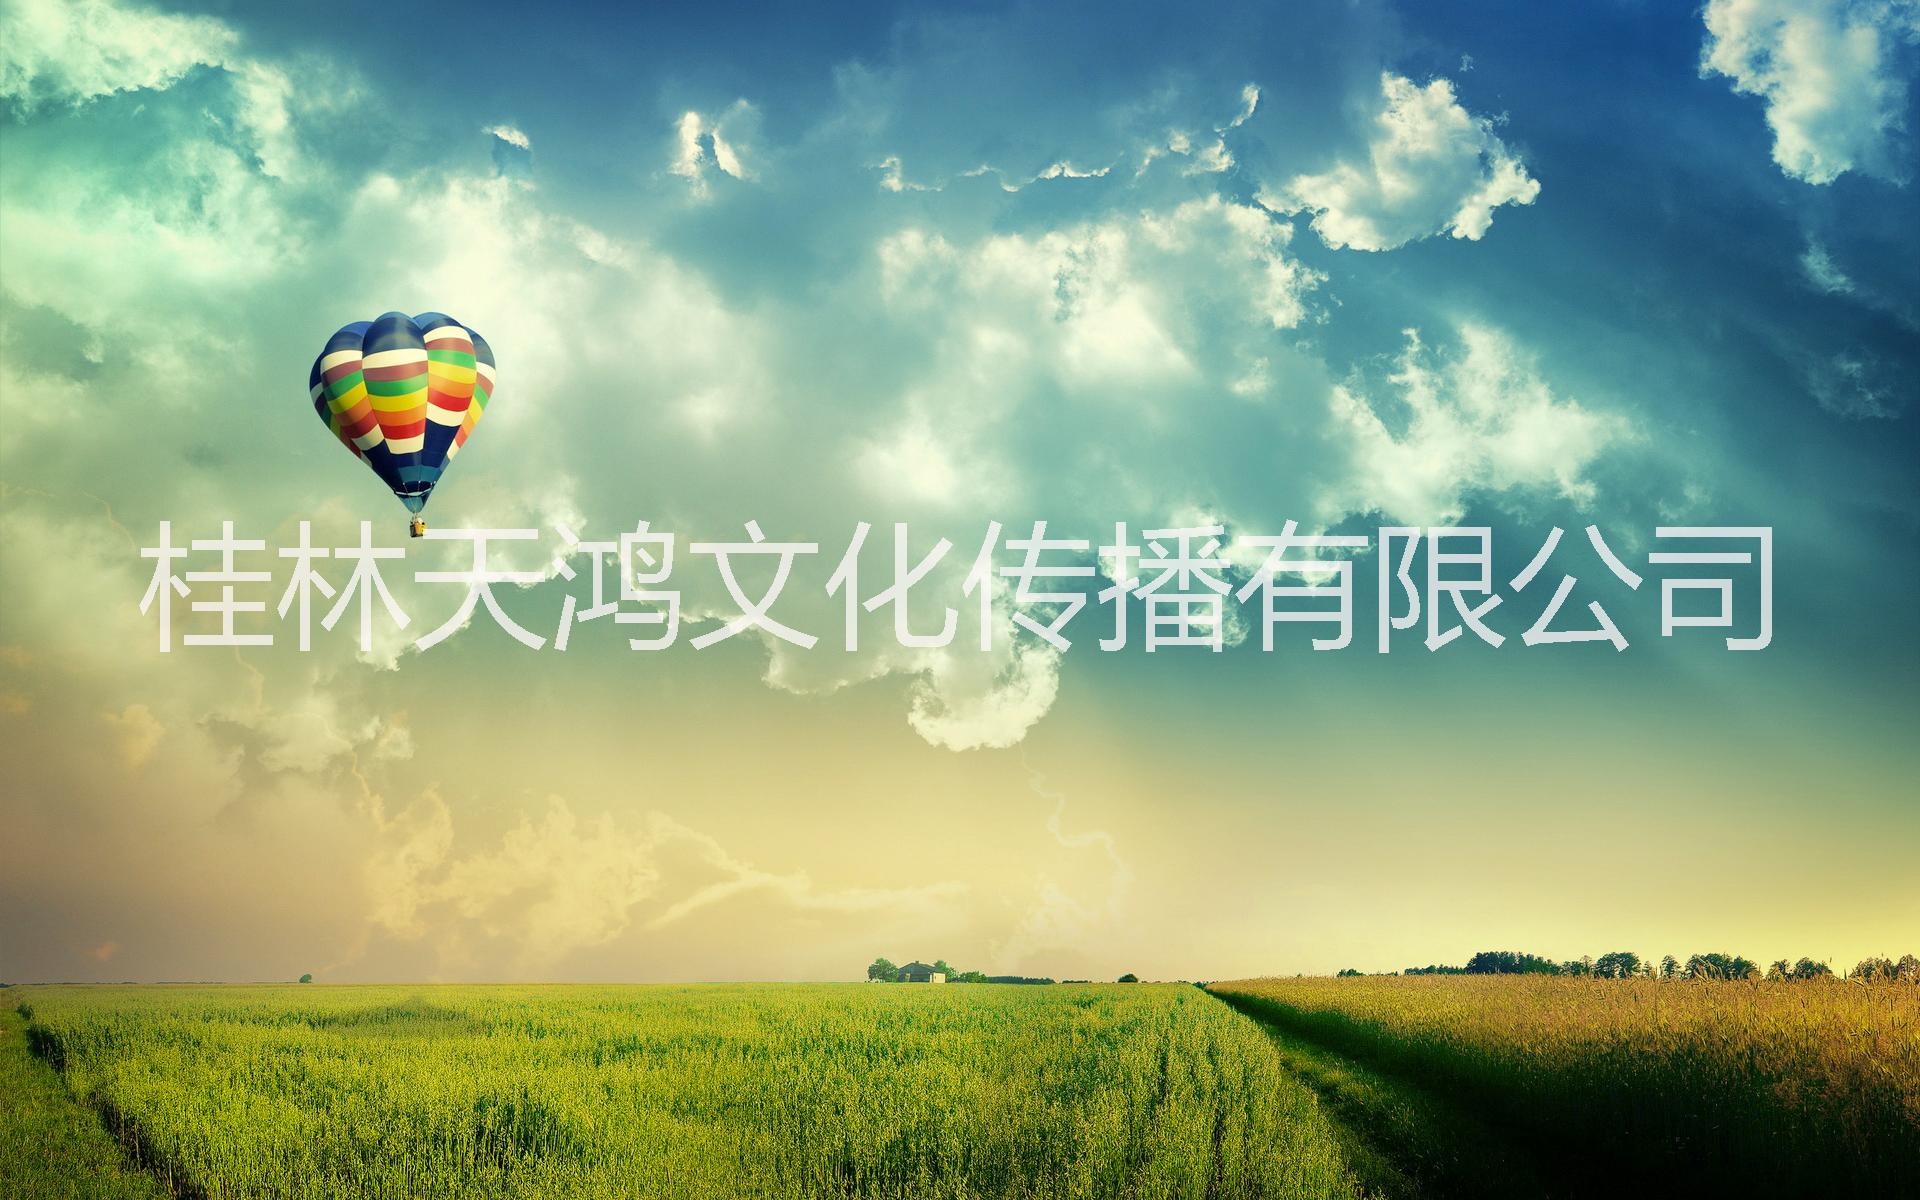 贵州黔西南热气球广告租赁出租,黔东南热气球广告,黔南载人热气球出租